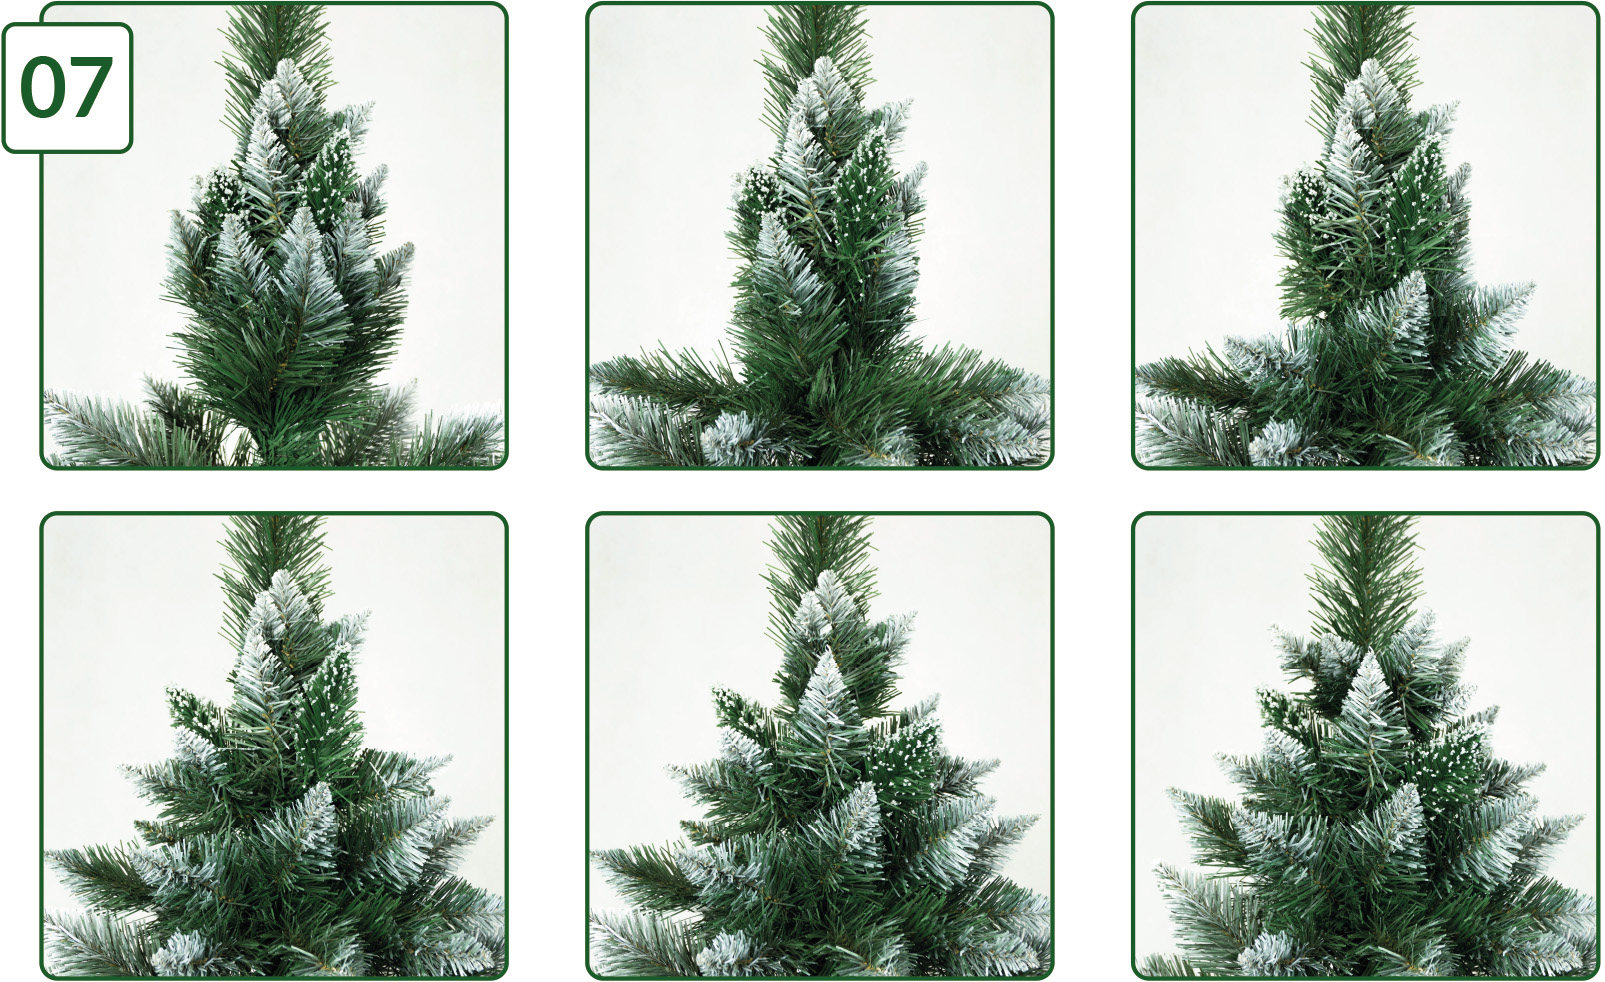 Dicas e truques sobre como construir corretamente uma árvore de Natal |  Lampamania